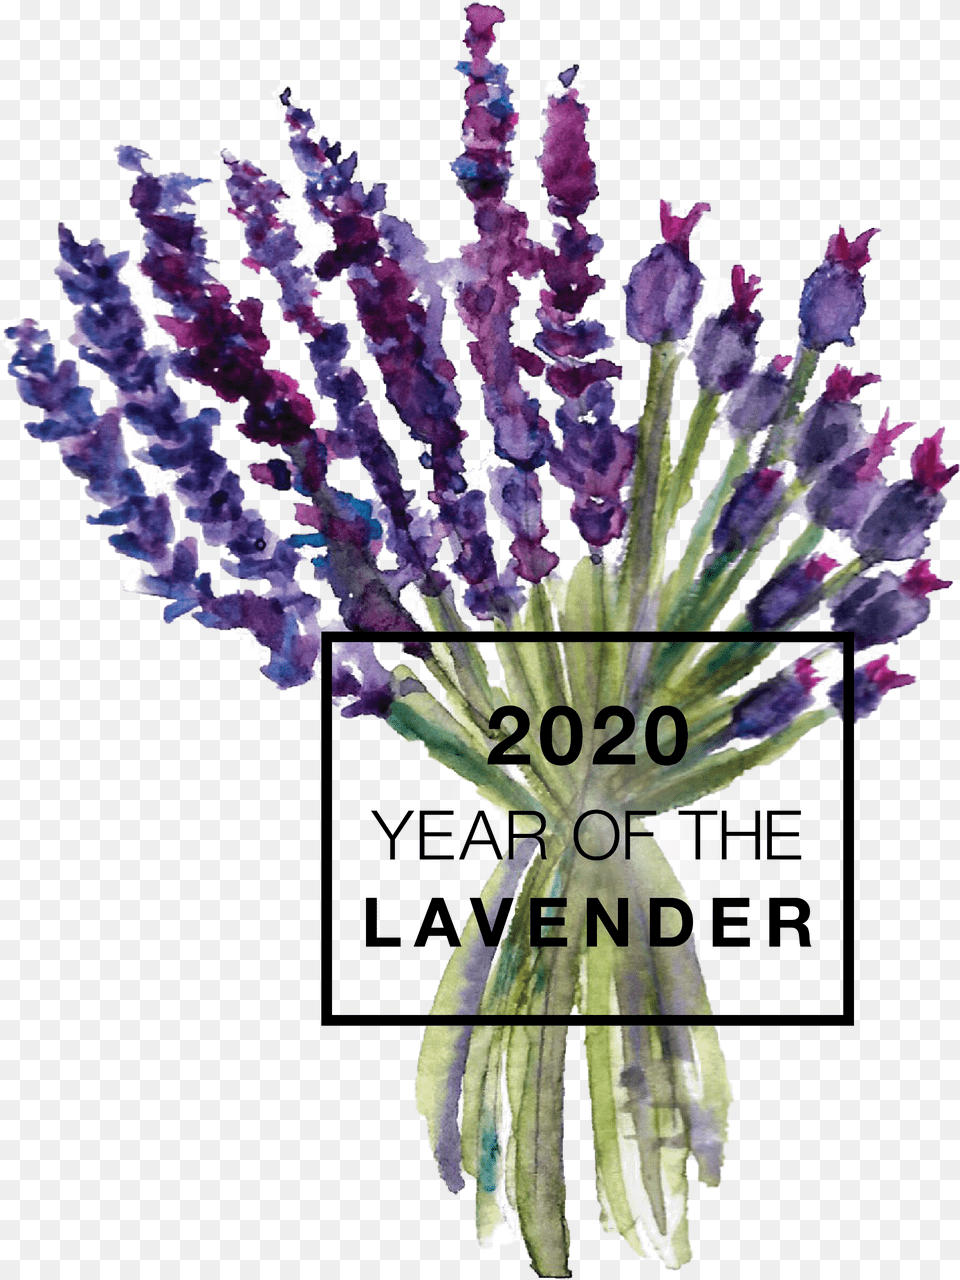 Year Of The Lavender 2020 Year Of The Lavender, Flower, Plant, Purple, Flower Arrangement Free Png Download